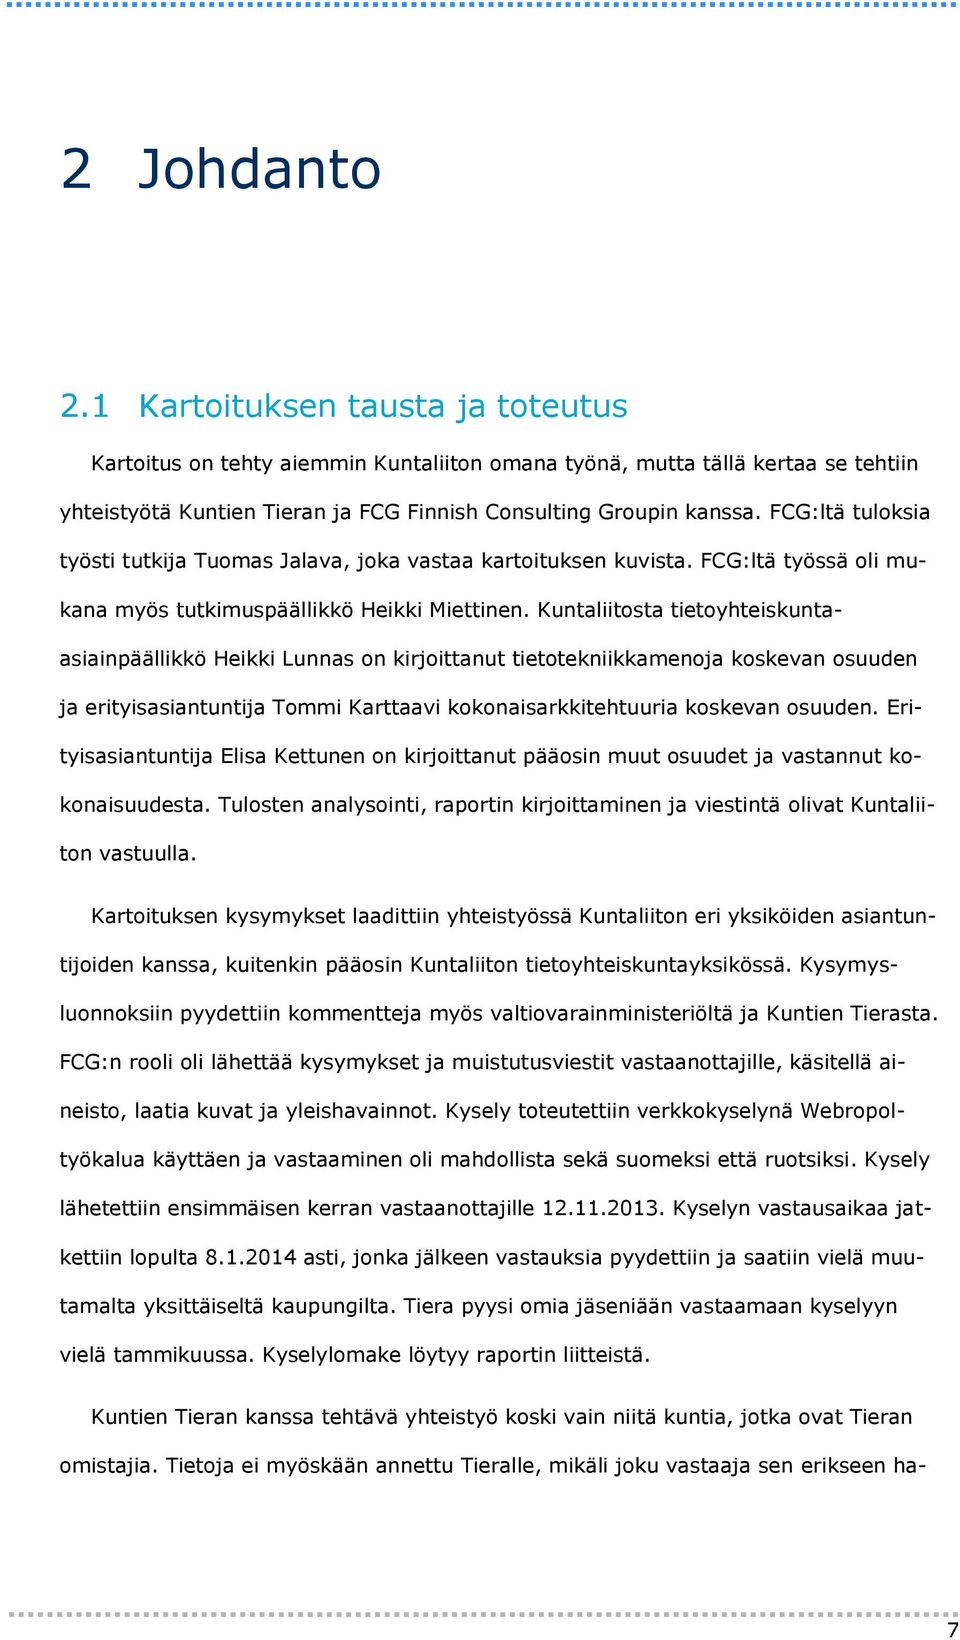 Kuntaliitosta tietoyhteiskuntaasiainpäällikkö Heikki Lunnas on kirjoittanut tietotekniikkamenoja koskevan osuuden ja erityisasiantuntija Tommi Karttaavi kokonaisarkkitehtuuria koskevan osuuden.